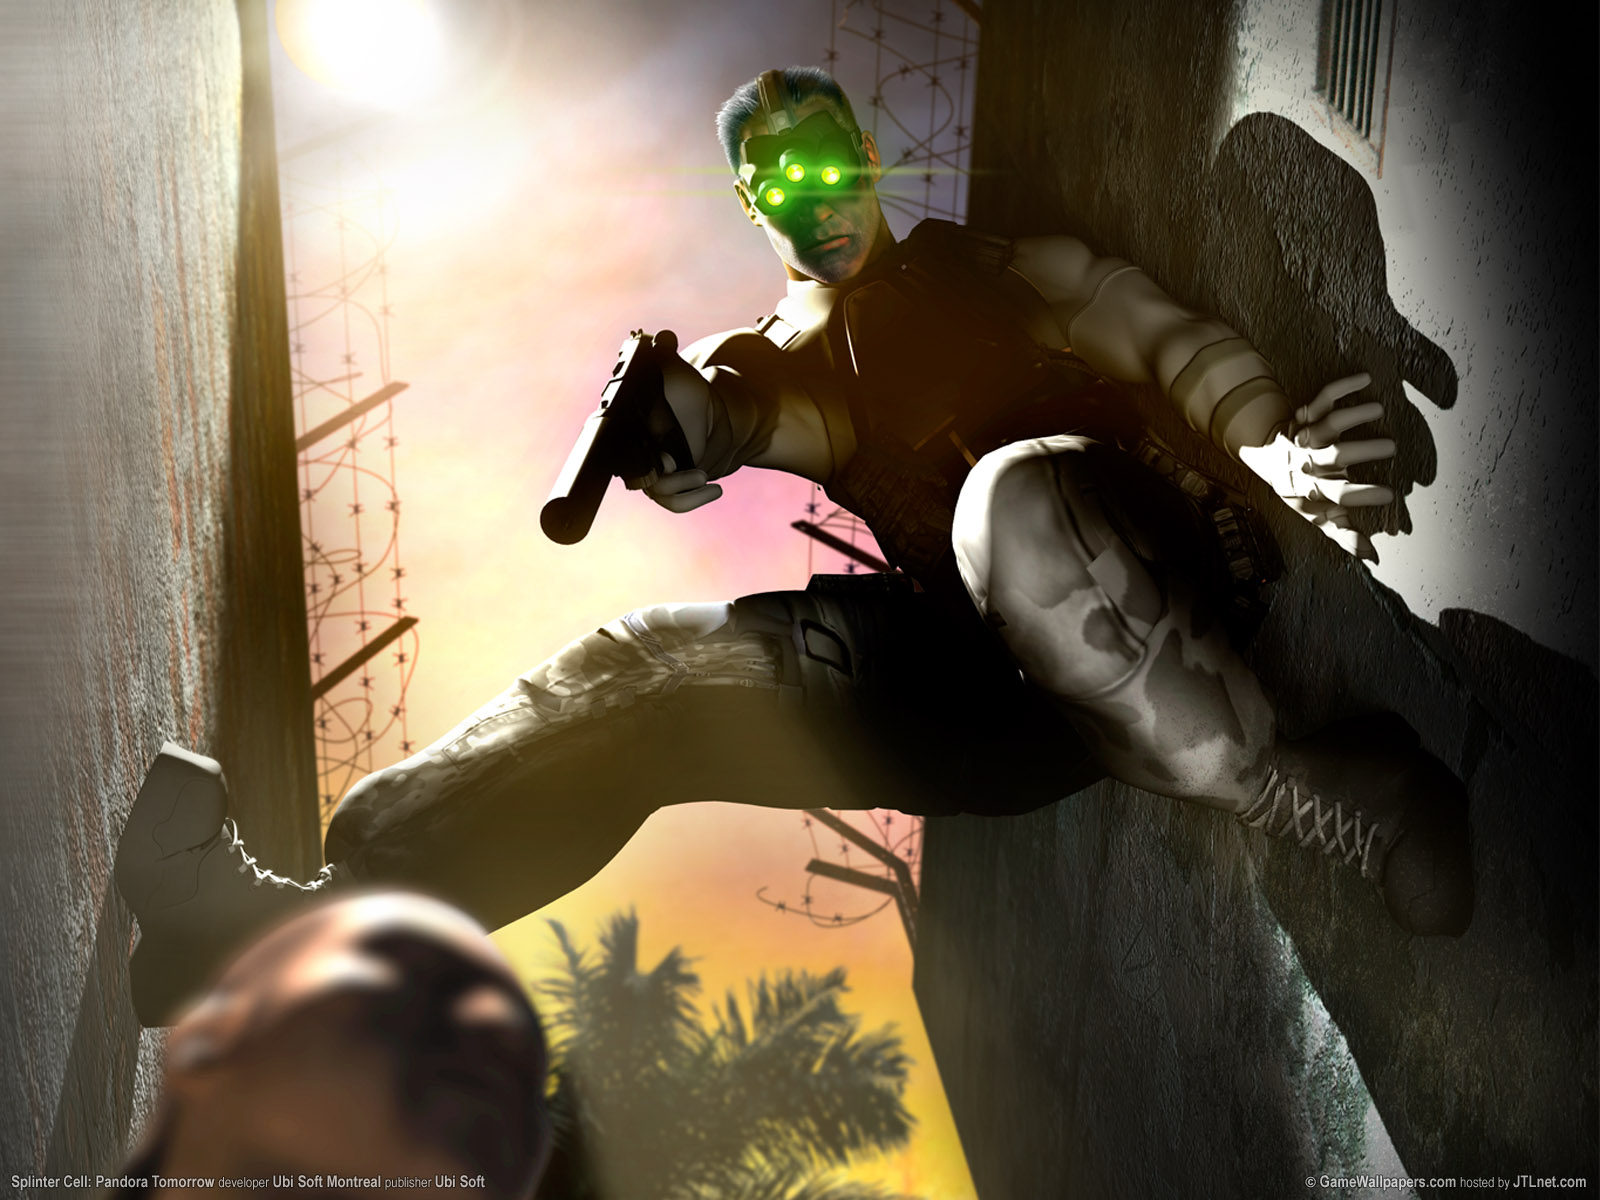 Splinter Cell: Double Agent MP Demo file - Mod DB